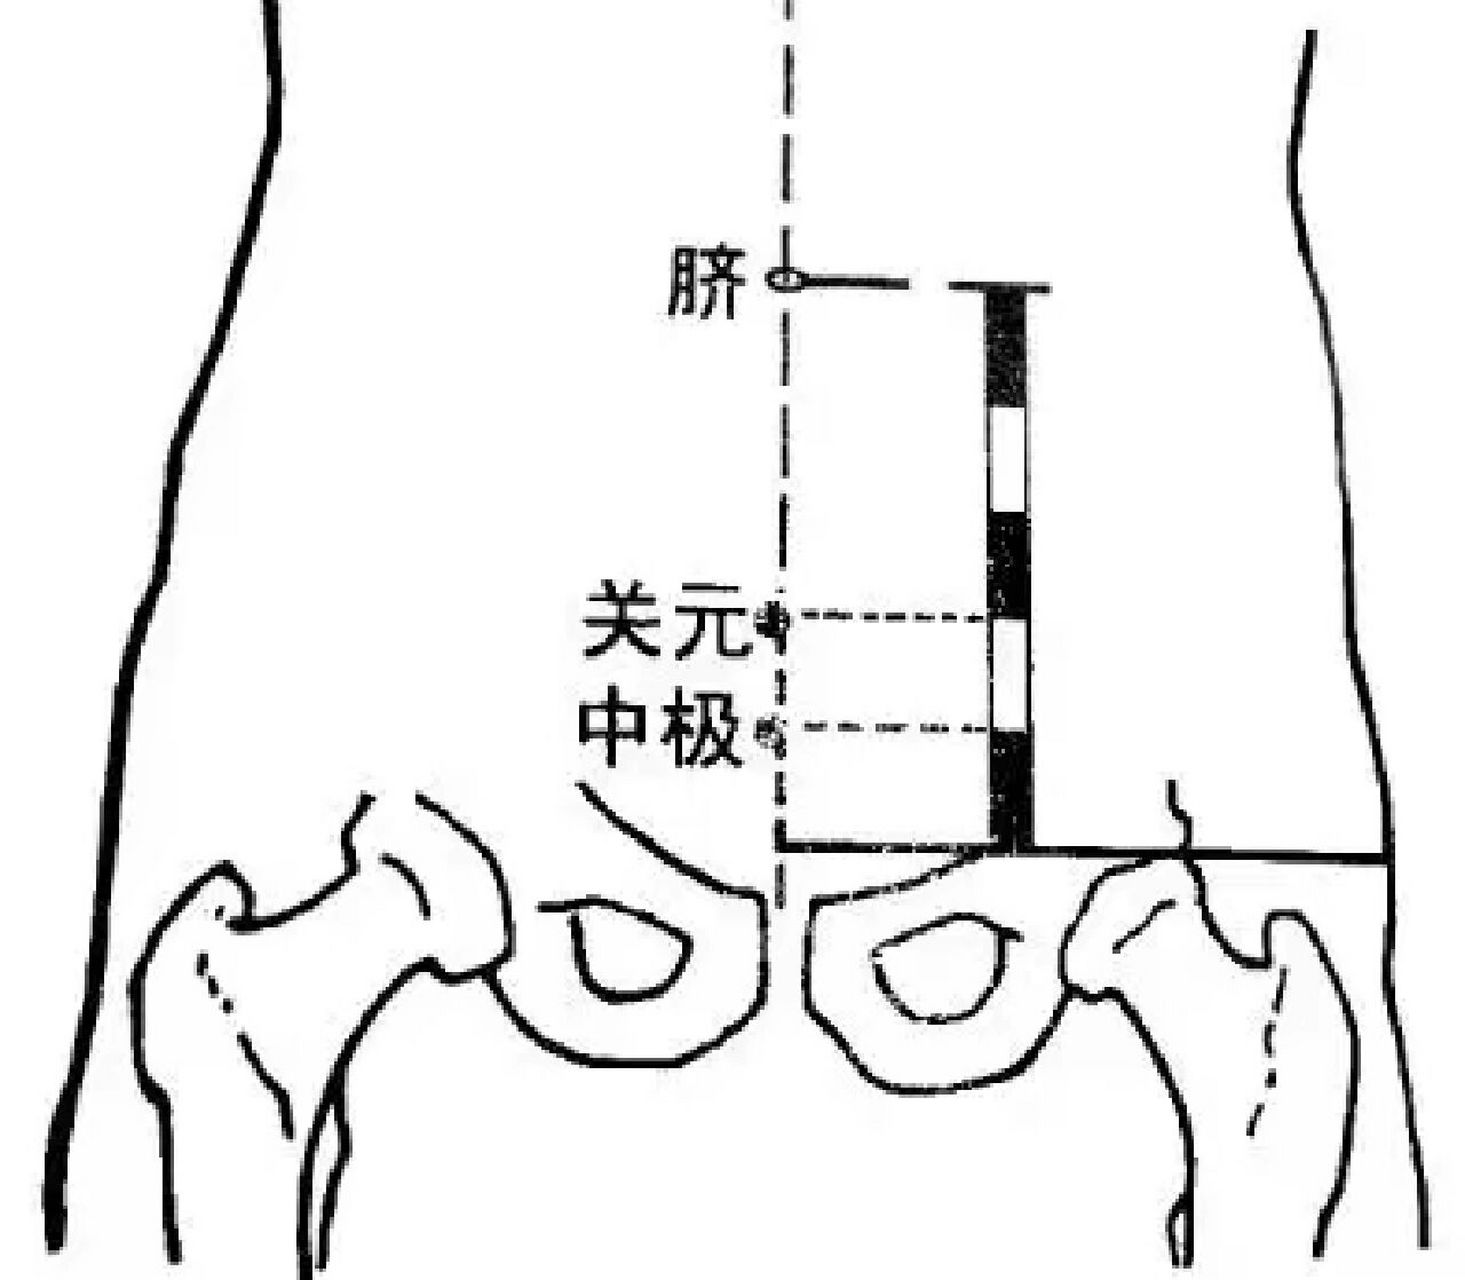 极穴 每日一穴 中极穴(治尿潴留,小便异常多按中极) 【位置】在下腹部